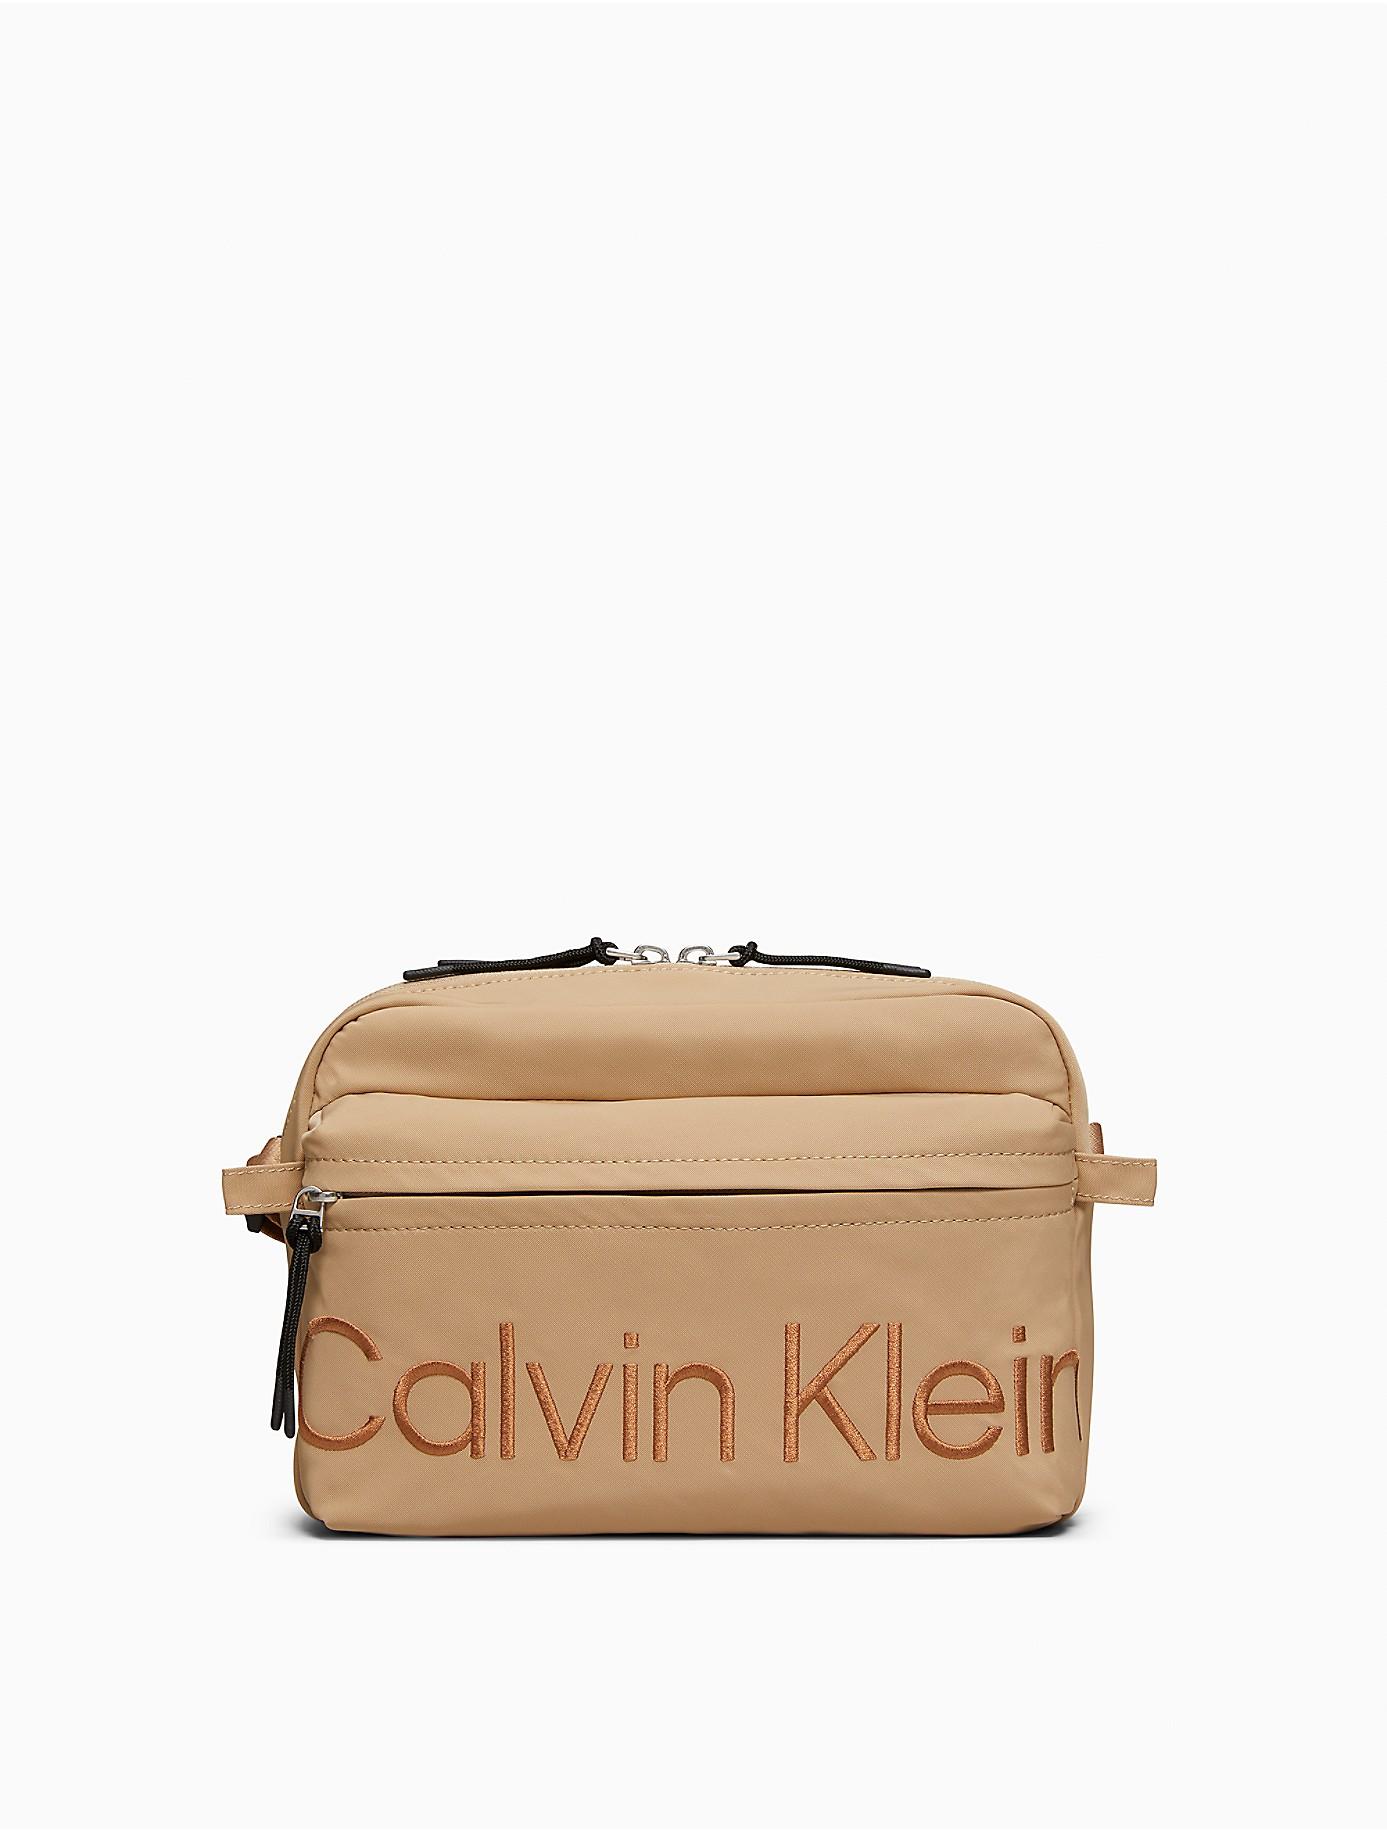 Calvin Klein Naturals Smooth Nylon Flight Bag for Men